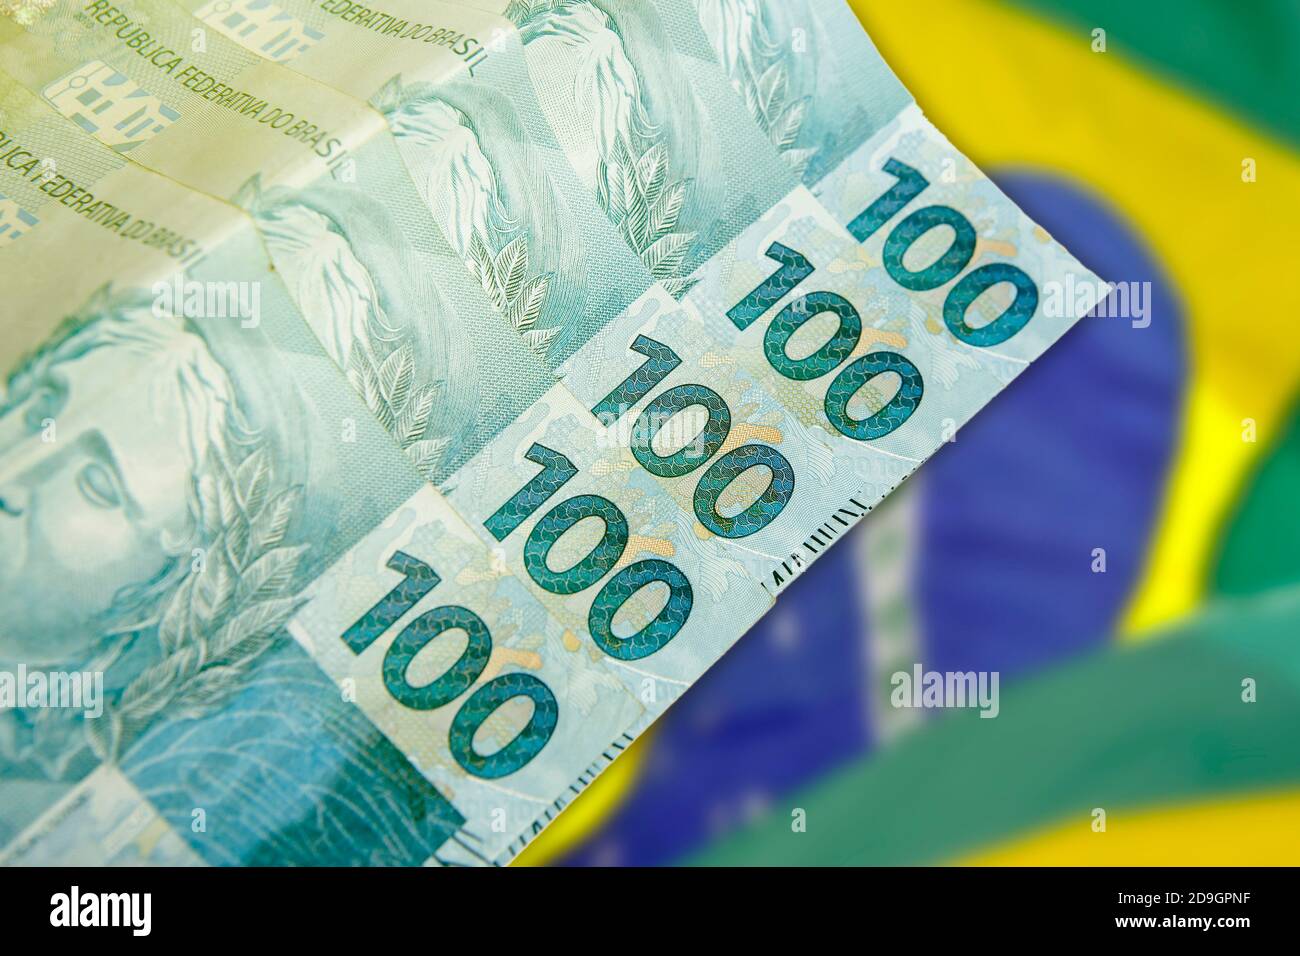 Mani in possesso di banconote reali brasiliane, denaro dal Brasile, banconote reali, banconote BRL Brasile, valuta brasiliana, economia e business Foto Stock